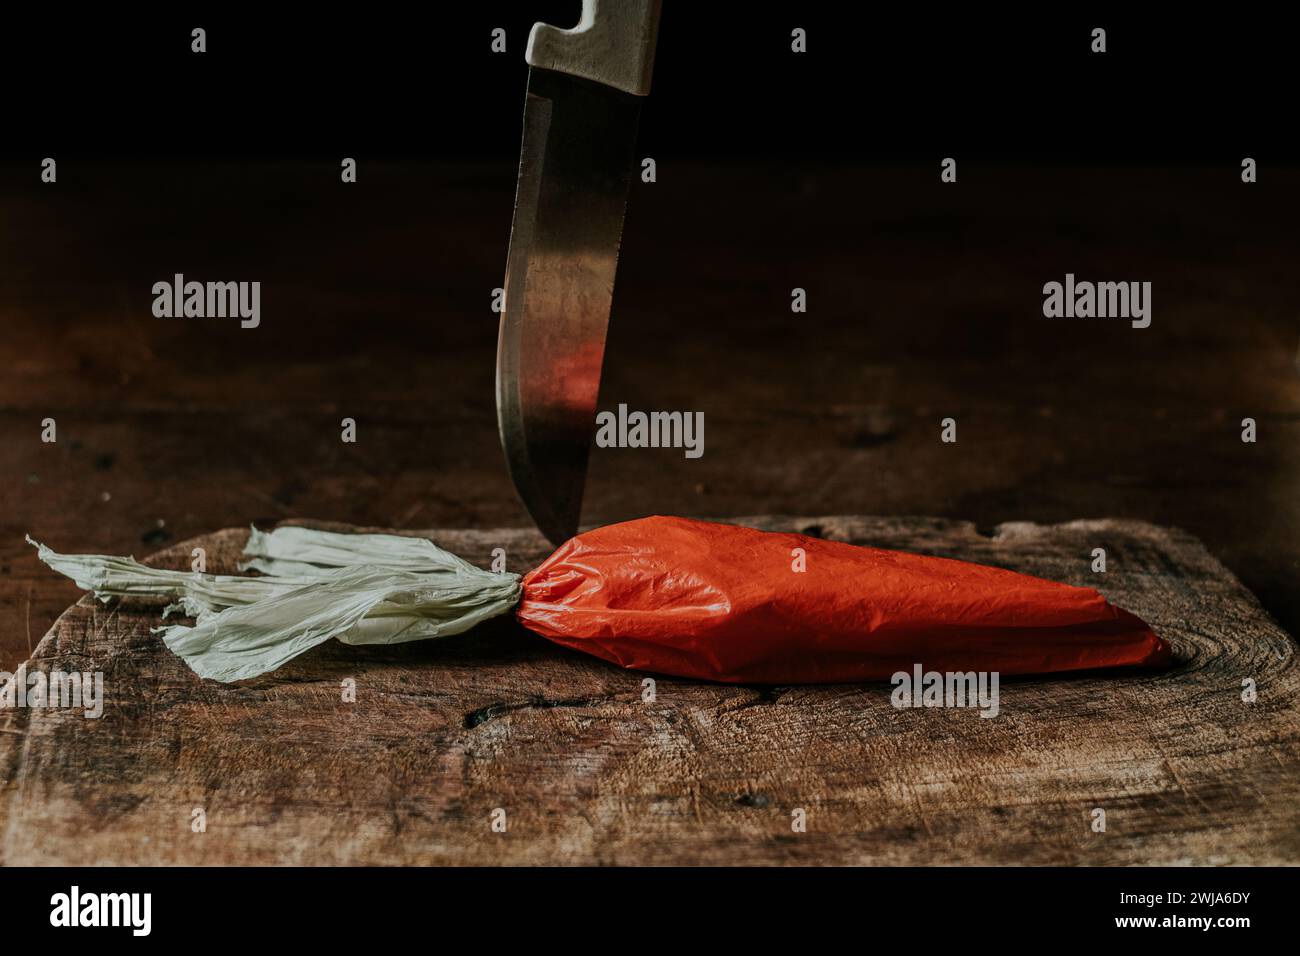 Eine Plastiktüte, die einer Karotte ähnelt und über ihr ein Küchenmesser auf einem abgenutzten Holzbrett platziert ist Stockfoto